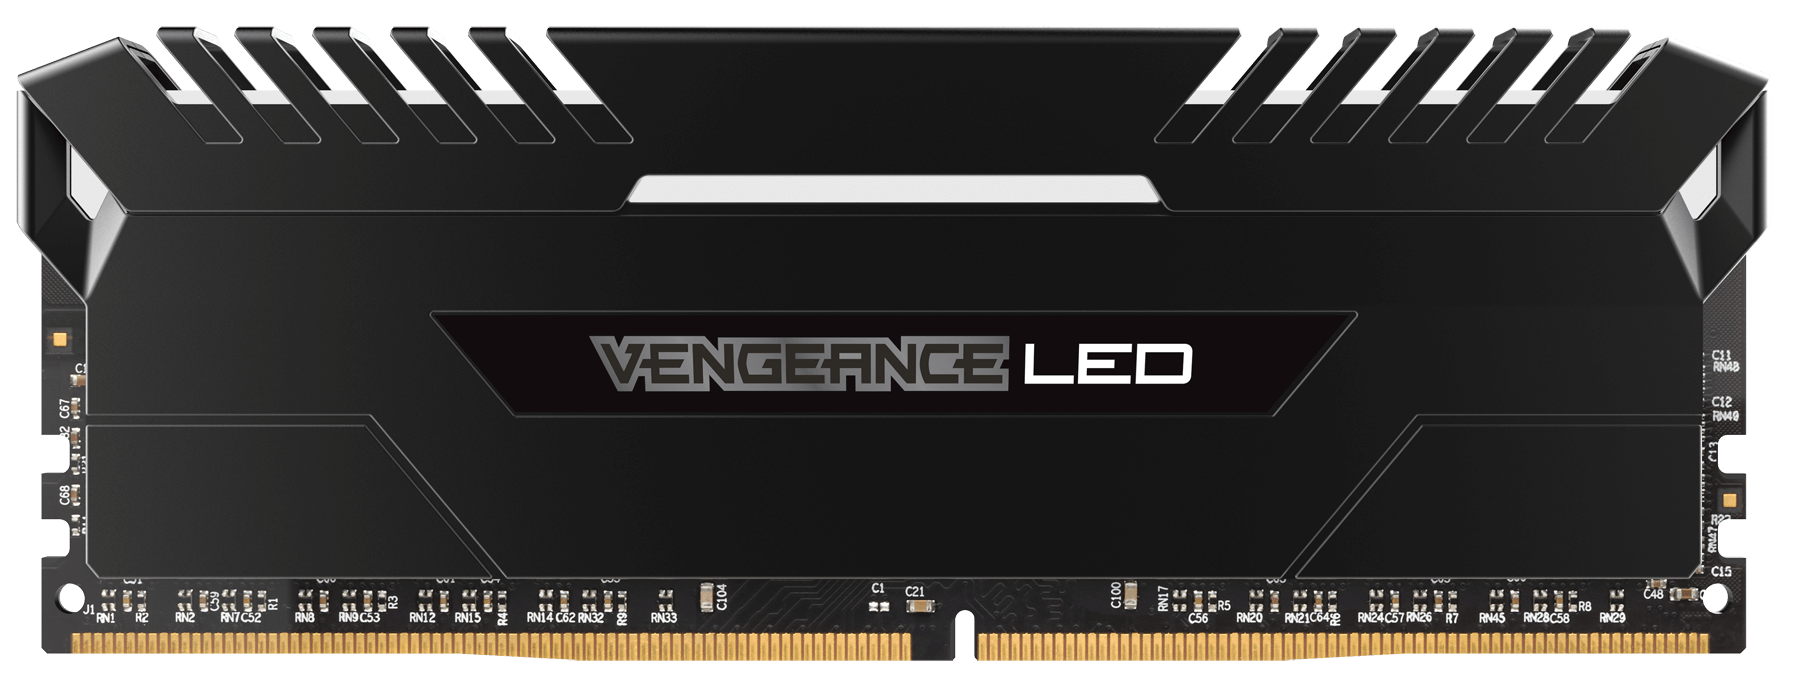 Memorie Desktop Corsair Vengeance LED 16GB (2 x 8GB) DDR4 2666MHz White title=Memorie Desktop Corsair Vengeance LED 16GB (2 x 8GB) DDR4 2666MHz White